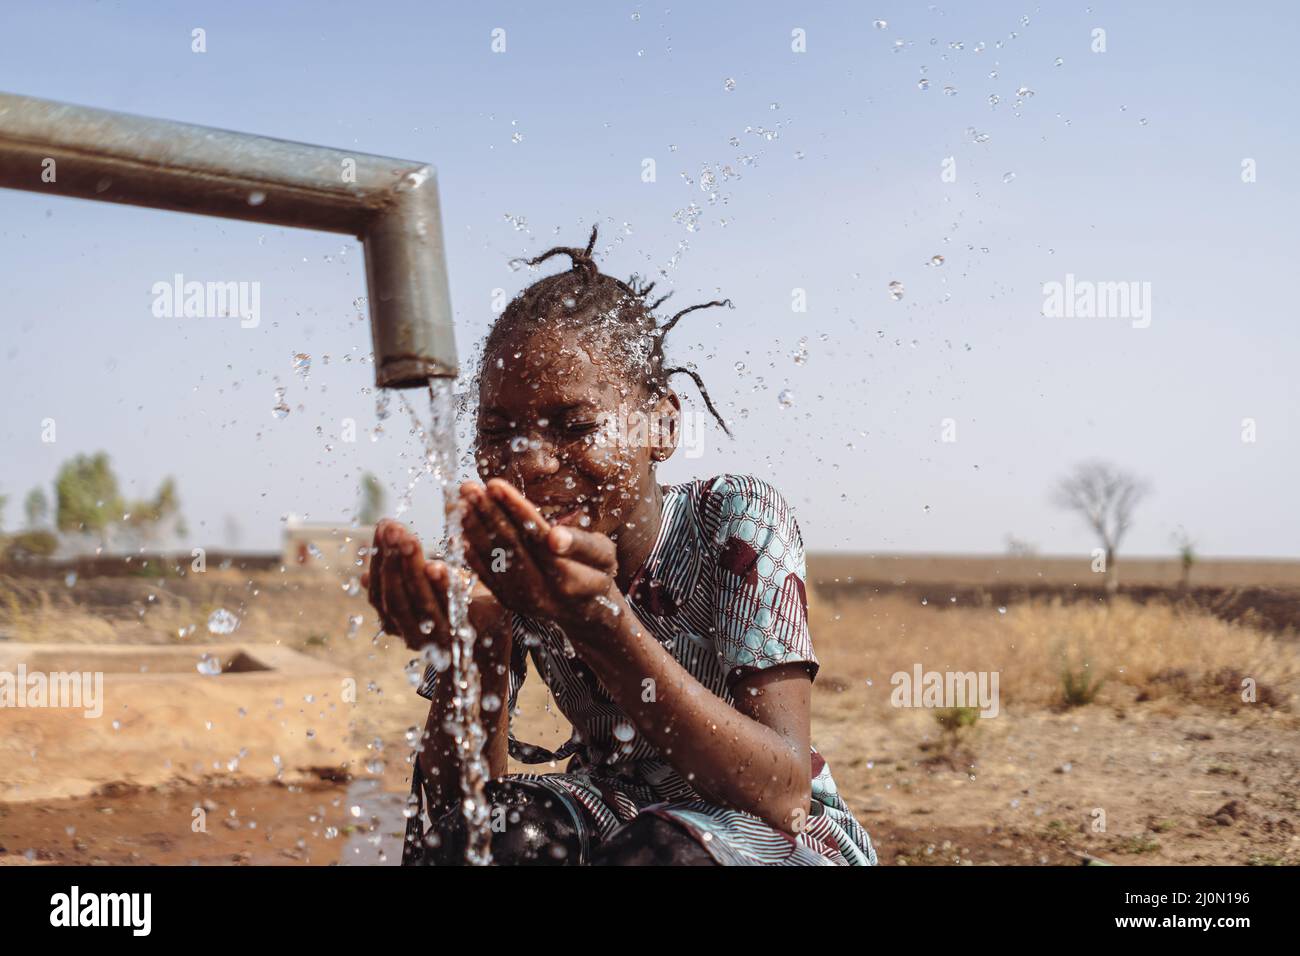 Poignée d'eau, poignée de joie pour cette jeune fille africaine. Banque D'Images